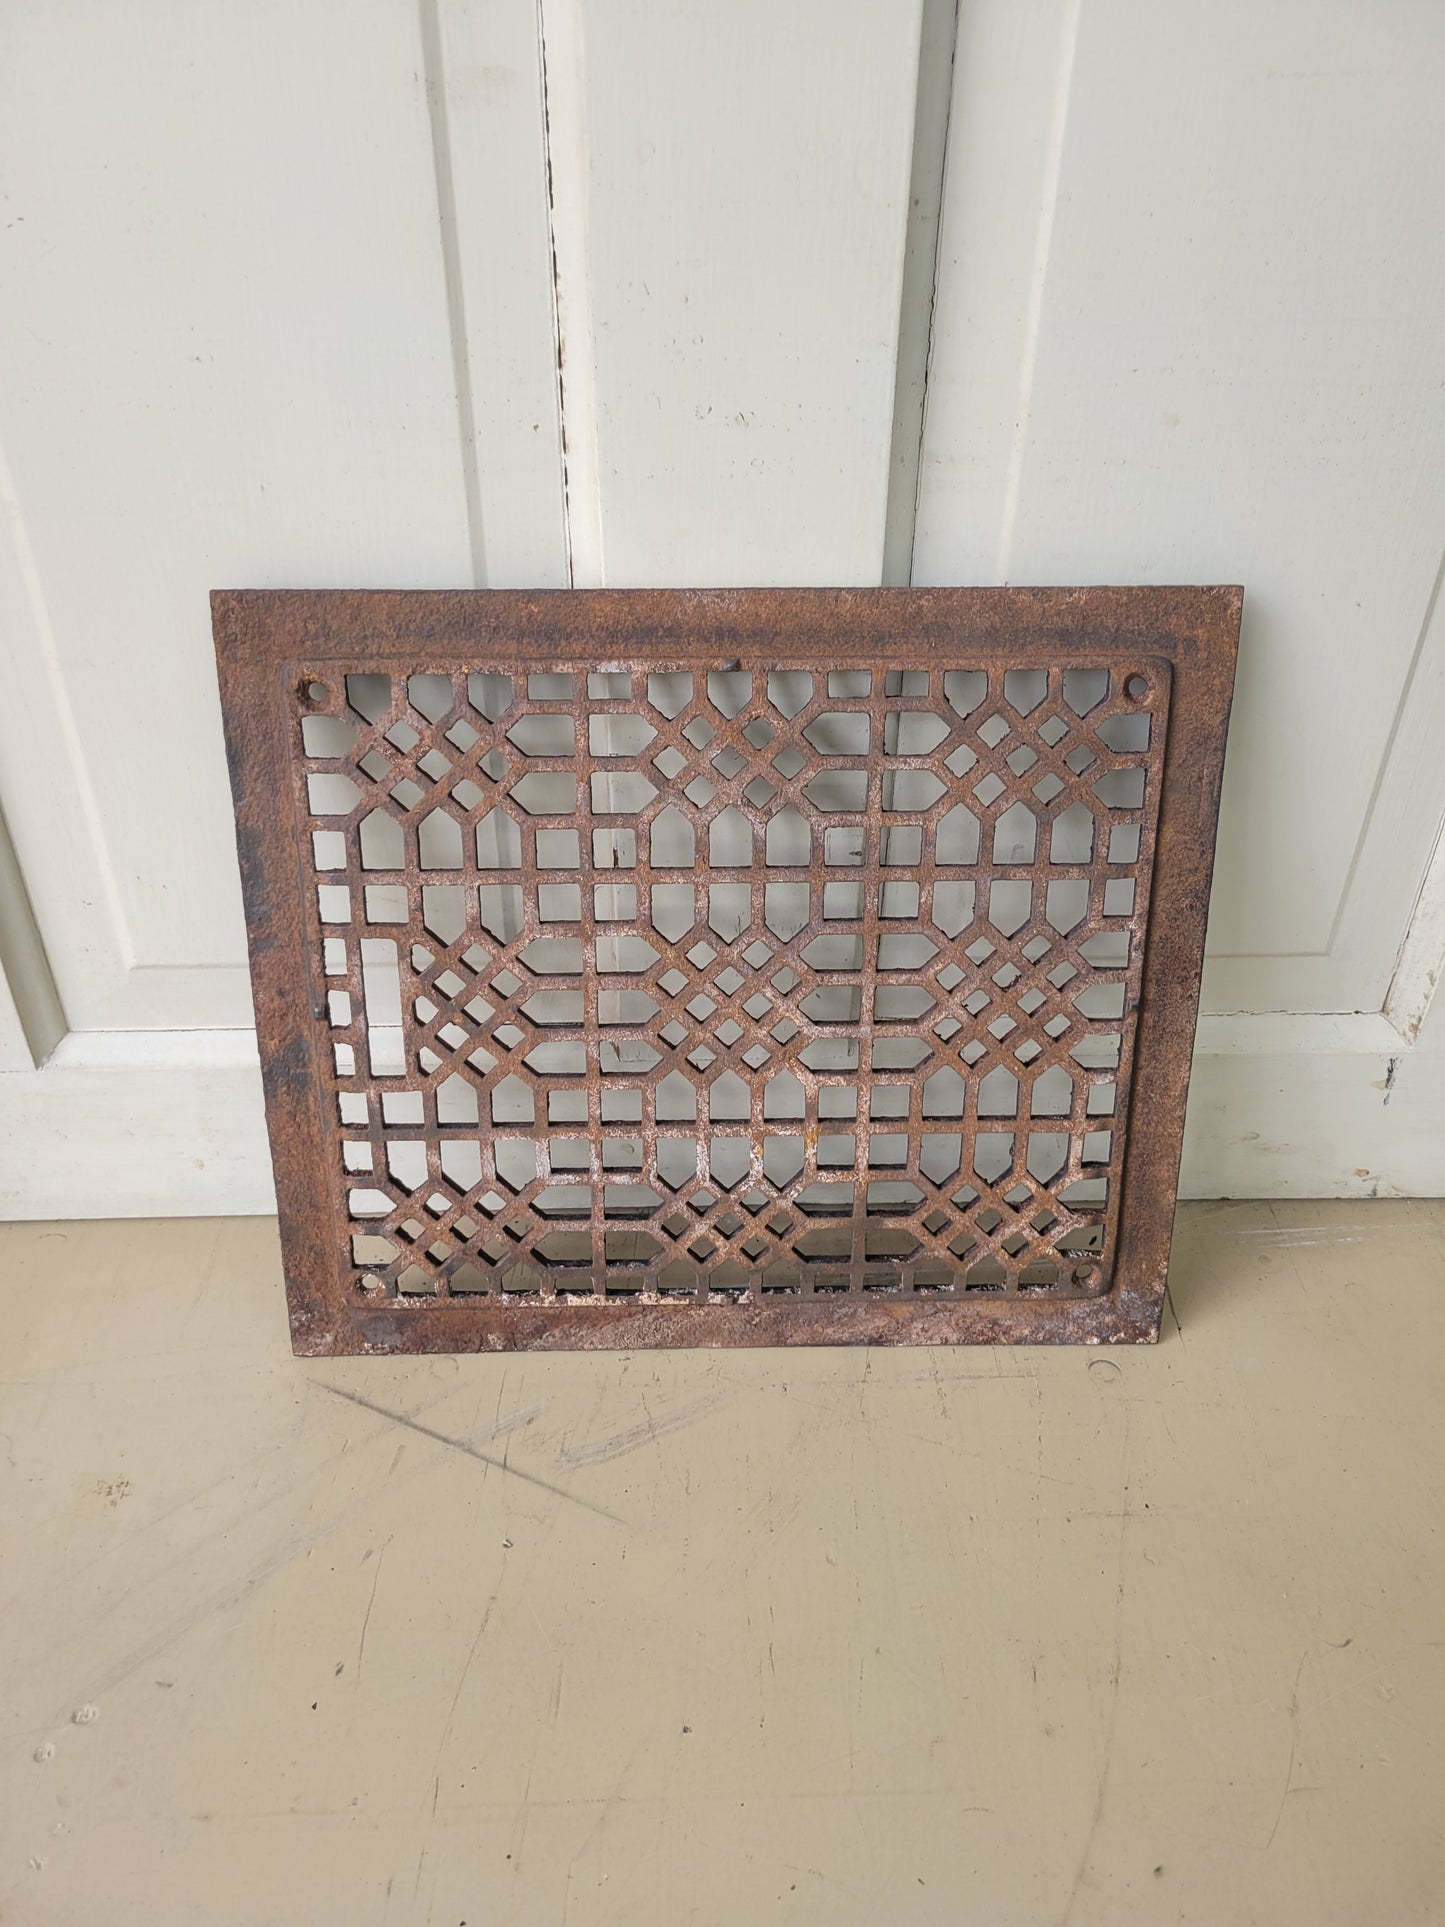 14 x 12 Ornate Iron Floor Grate, Antique Iron Vent Cover #031806